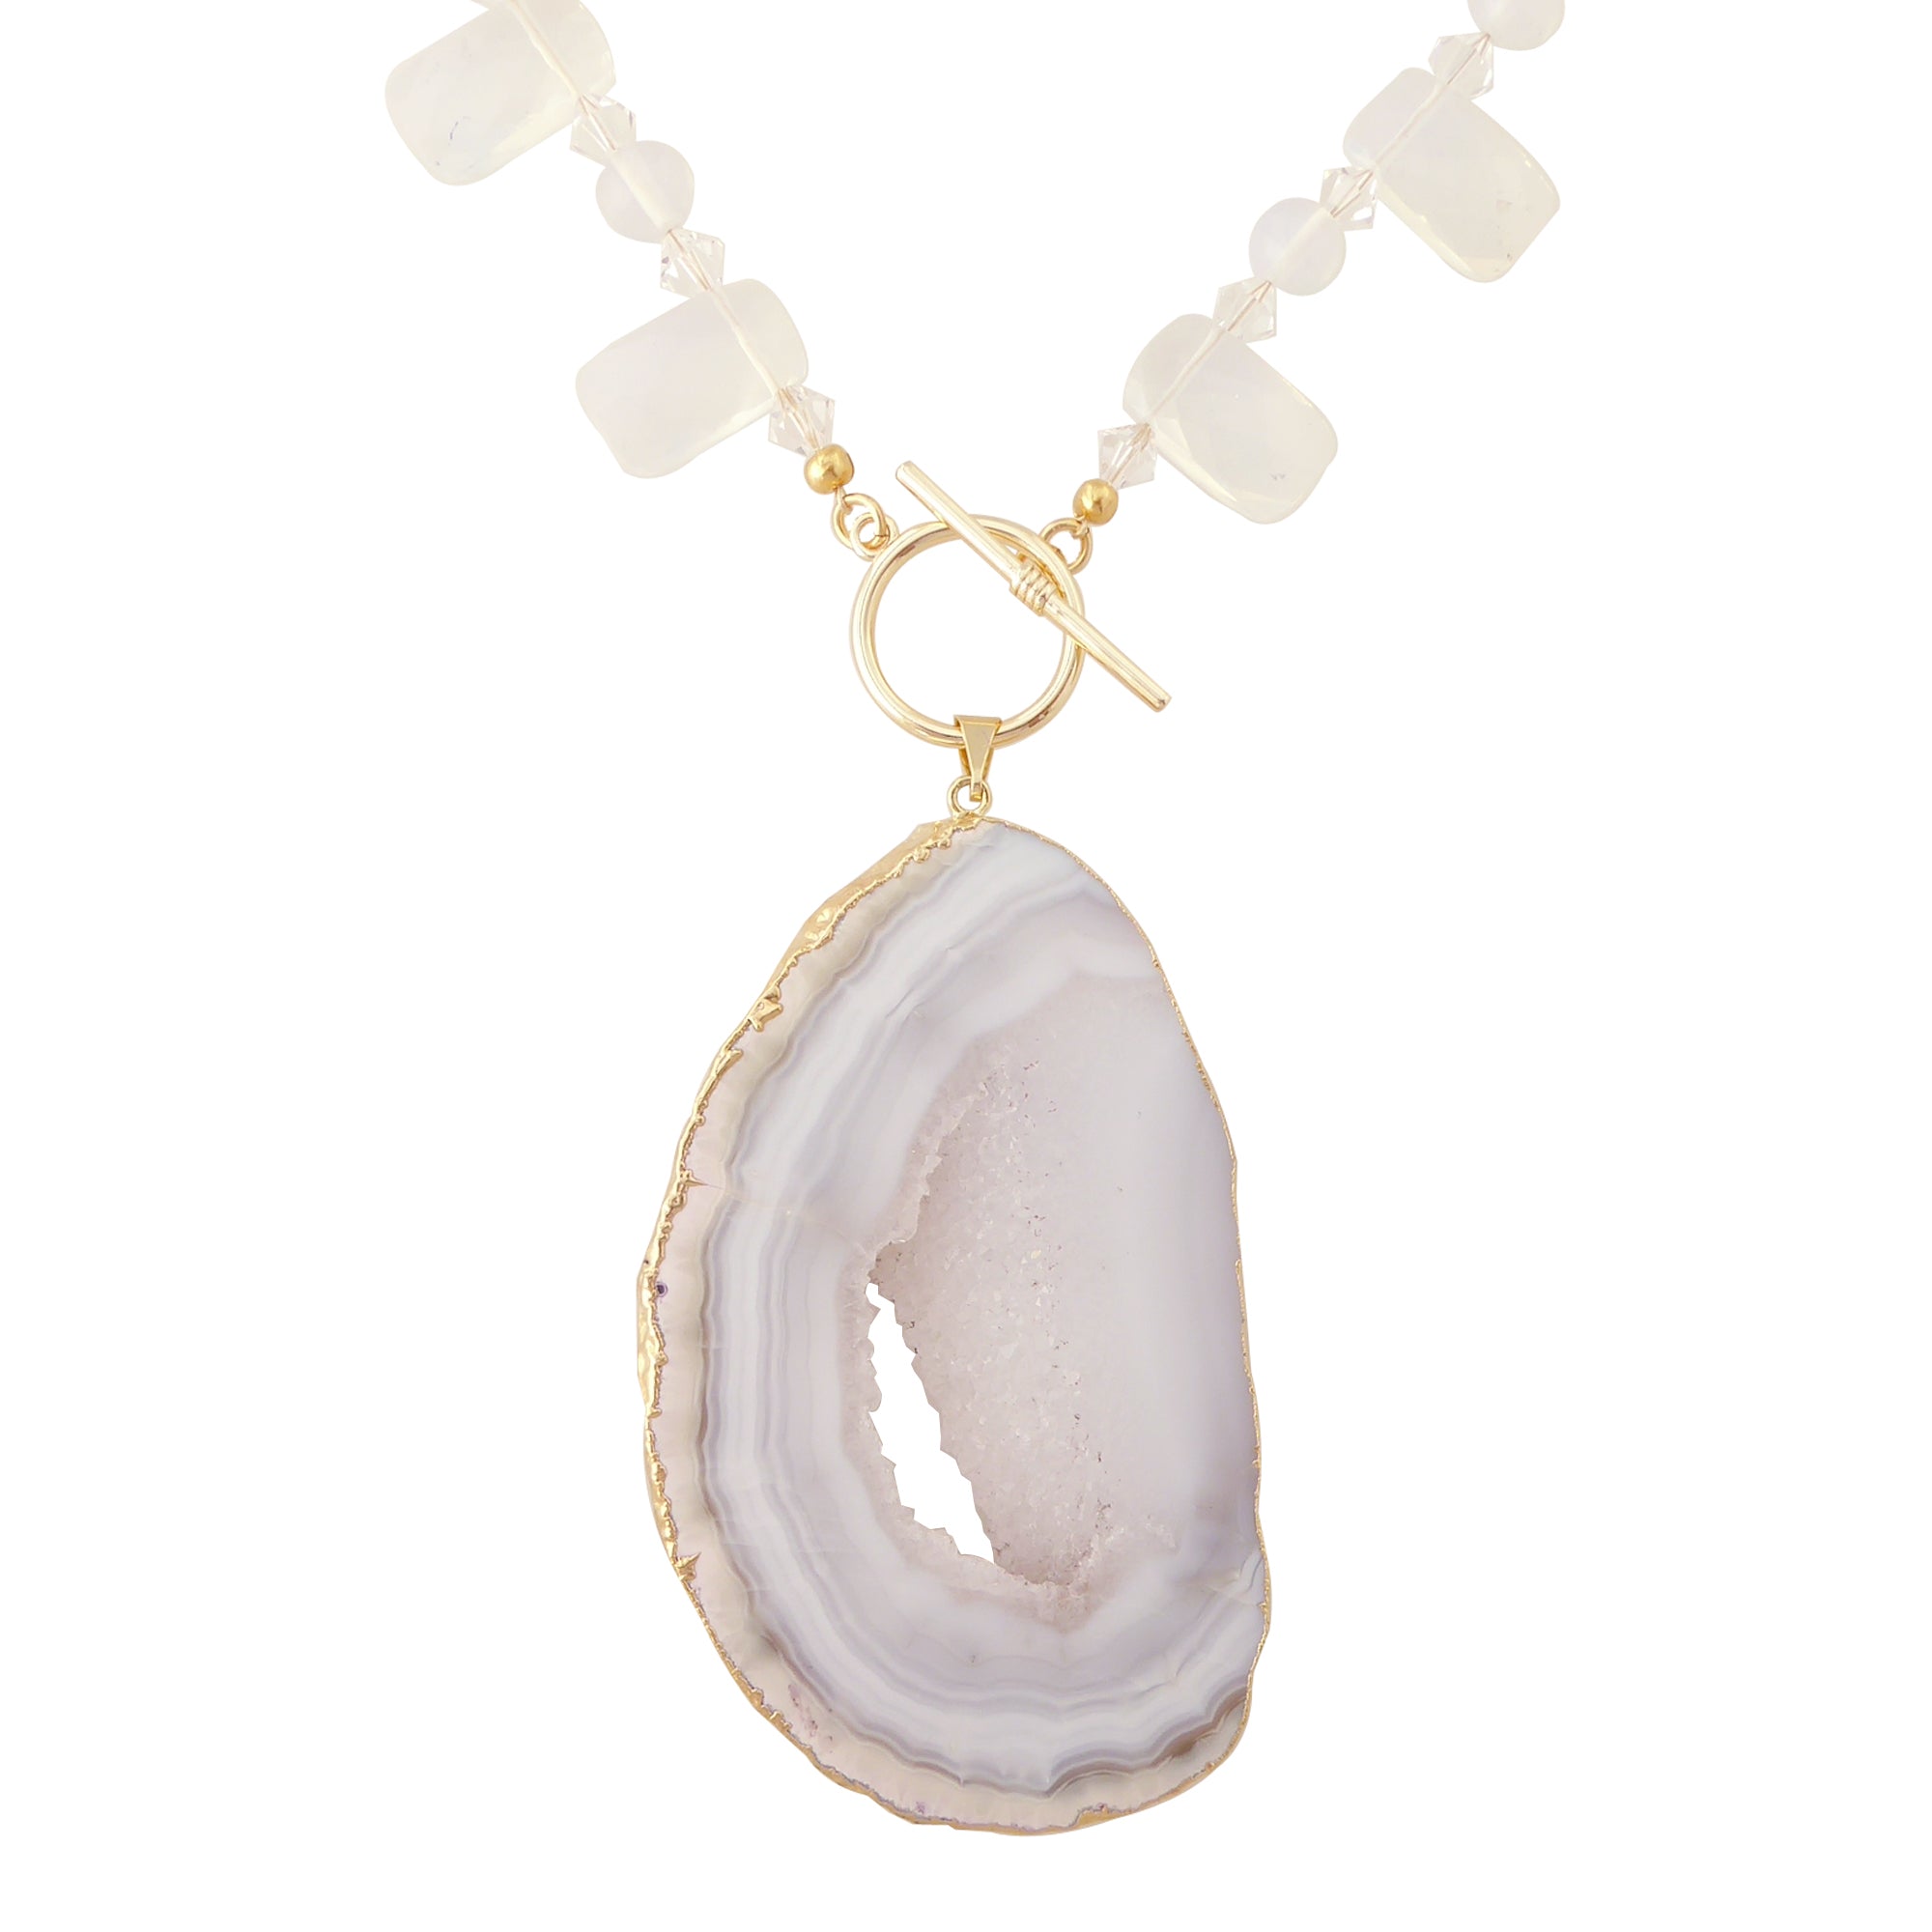    Dove gray agate slice necklace by Jenny Dayco 1